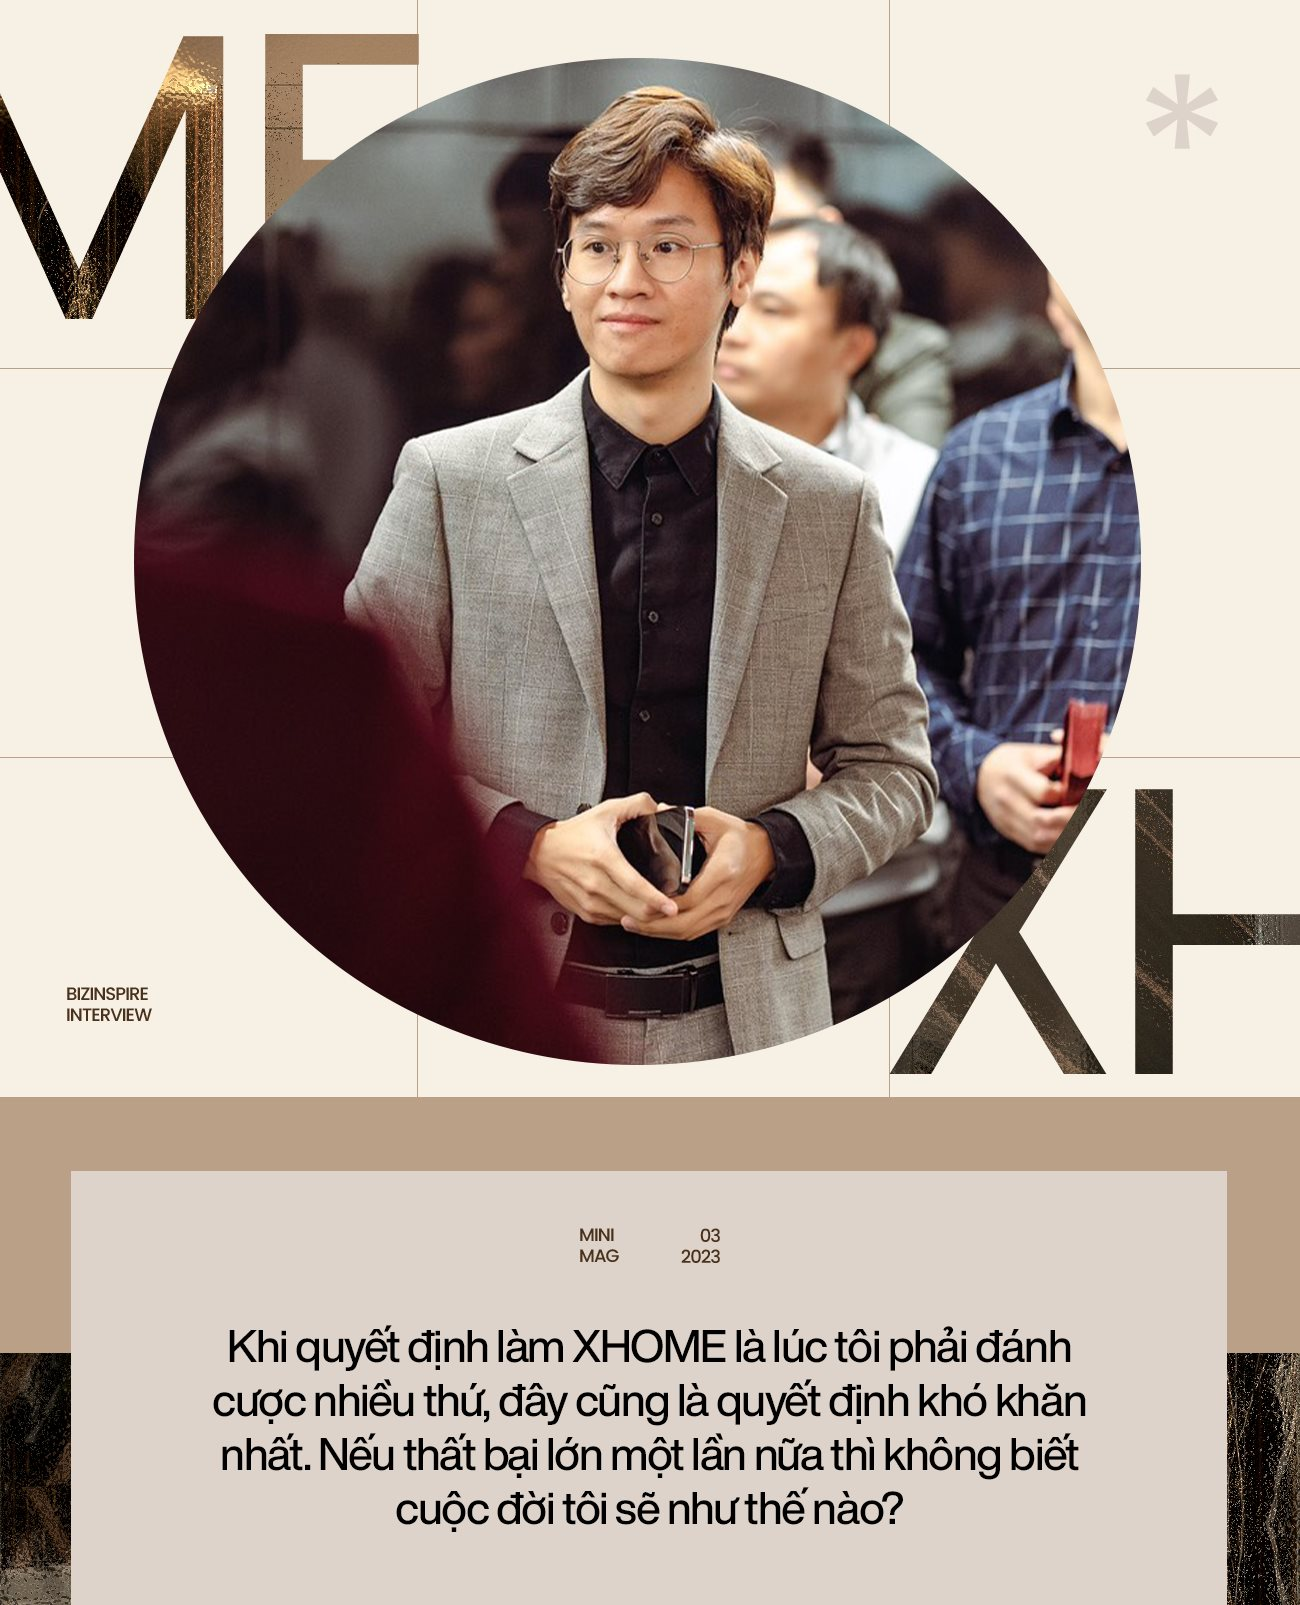 Founder & CEO XHOME Việt Nam 2 lần bán nhà để nuôi mộng kinh doanh: Trong khởi nghiệp, bản thân người đứng đầu phải ‘hão huyền’ - Ảnh 5.